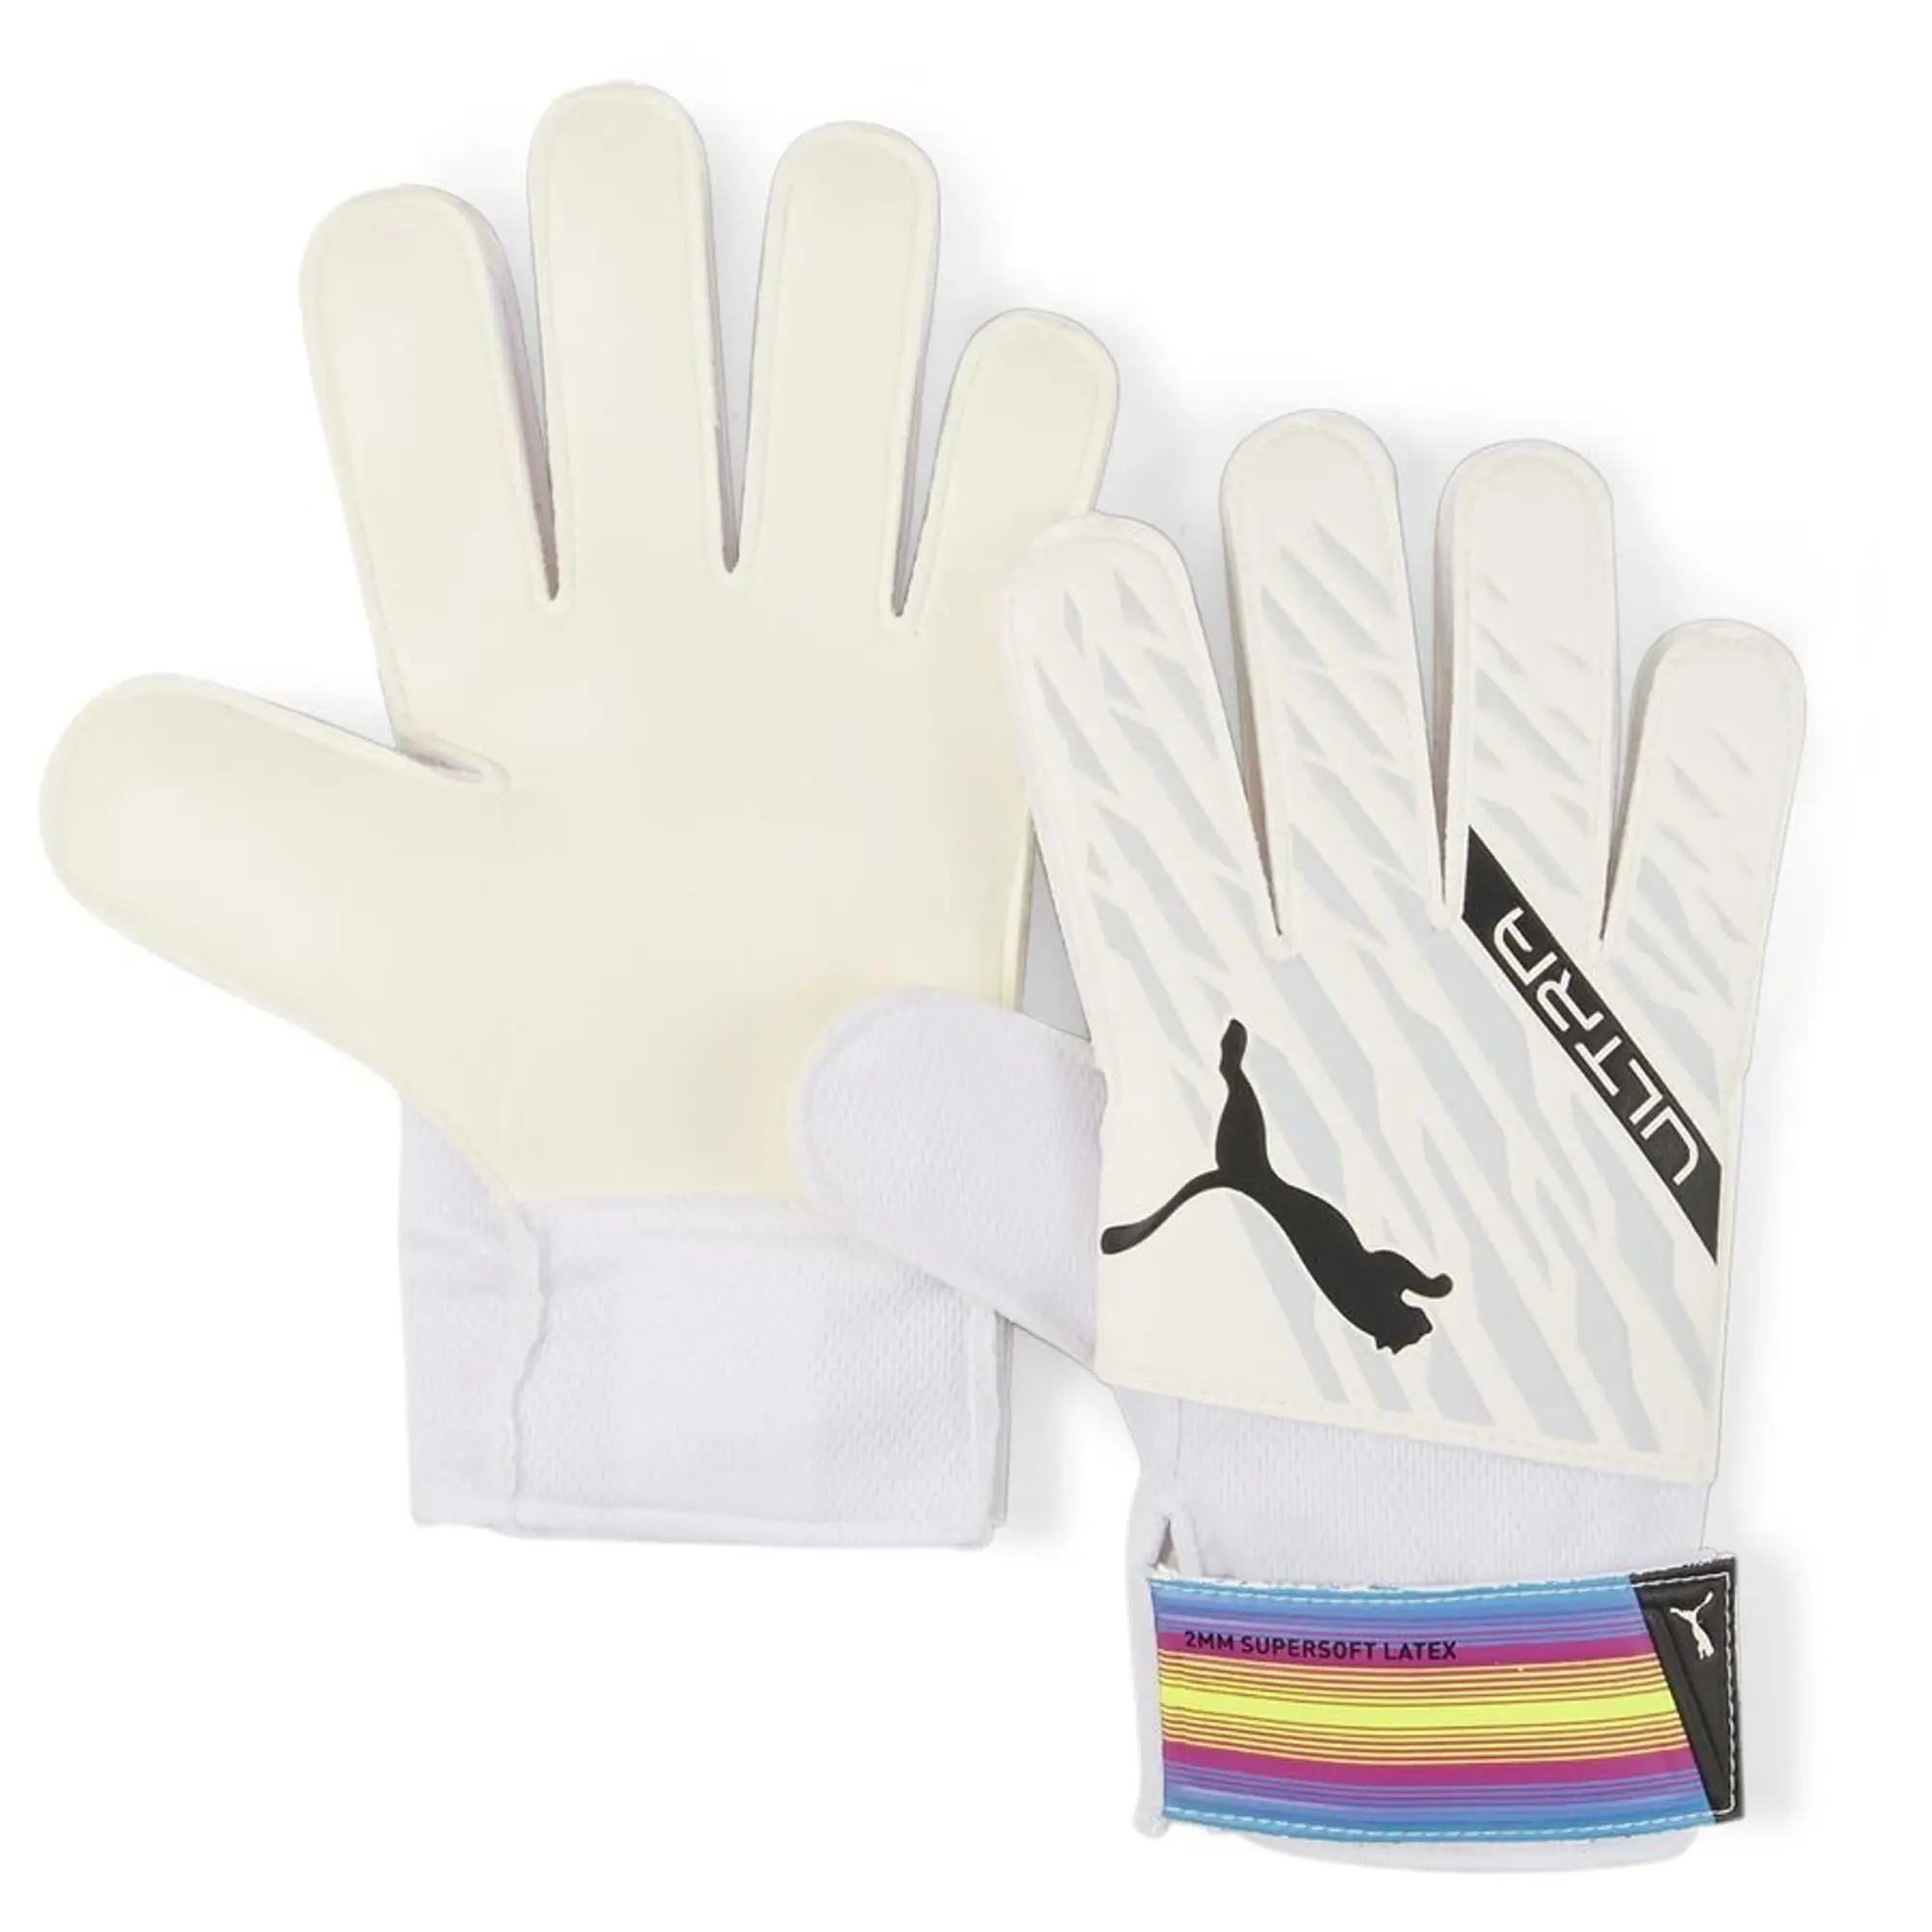 Puma Ultra Grip 4 Goalkeeper Gloves - White